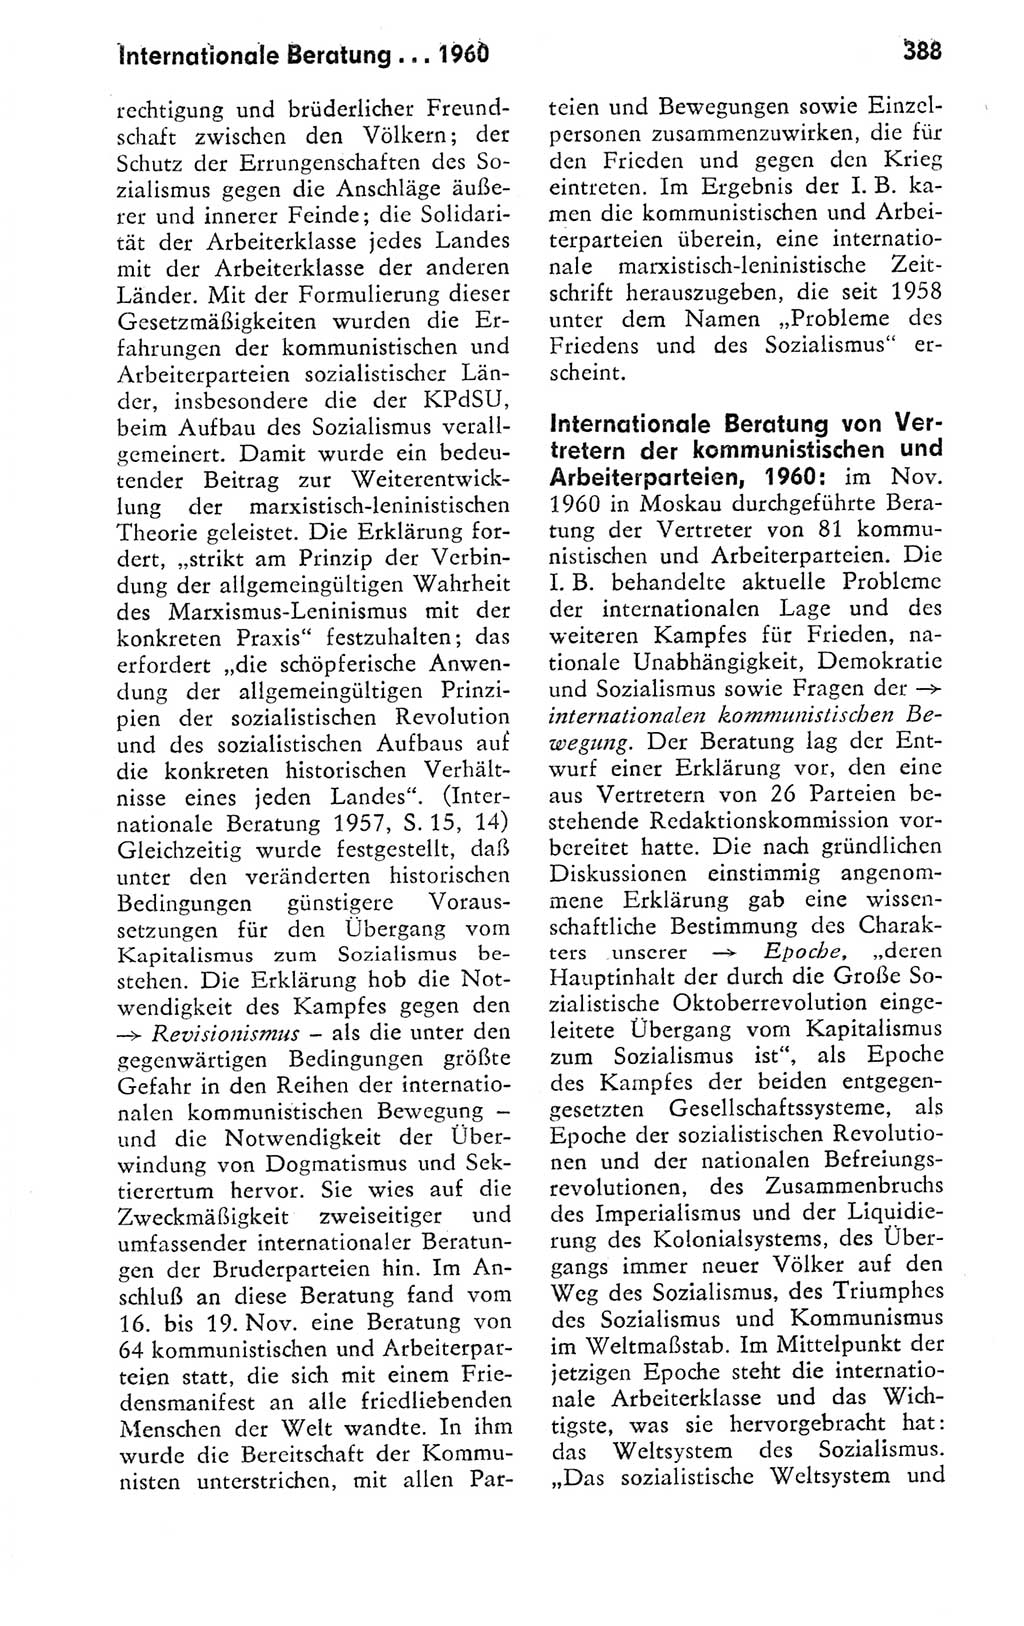 Kleines politisches Wörterbuch [Deutsche Demokratische Republik (DDR)] 1978, Seite 388 (Kl. pol. Wb. DDR 1978, S. 388)